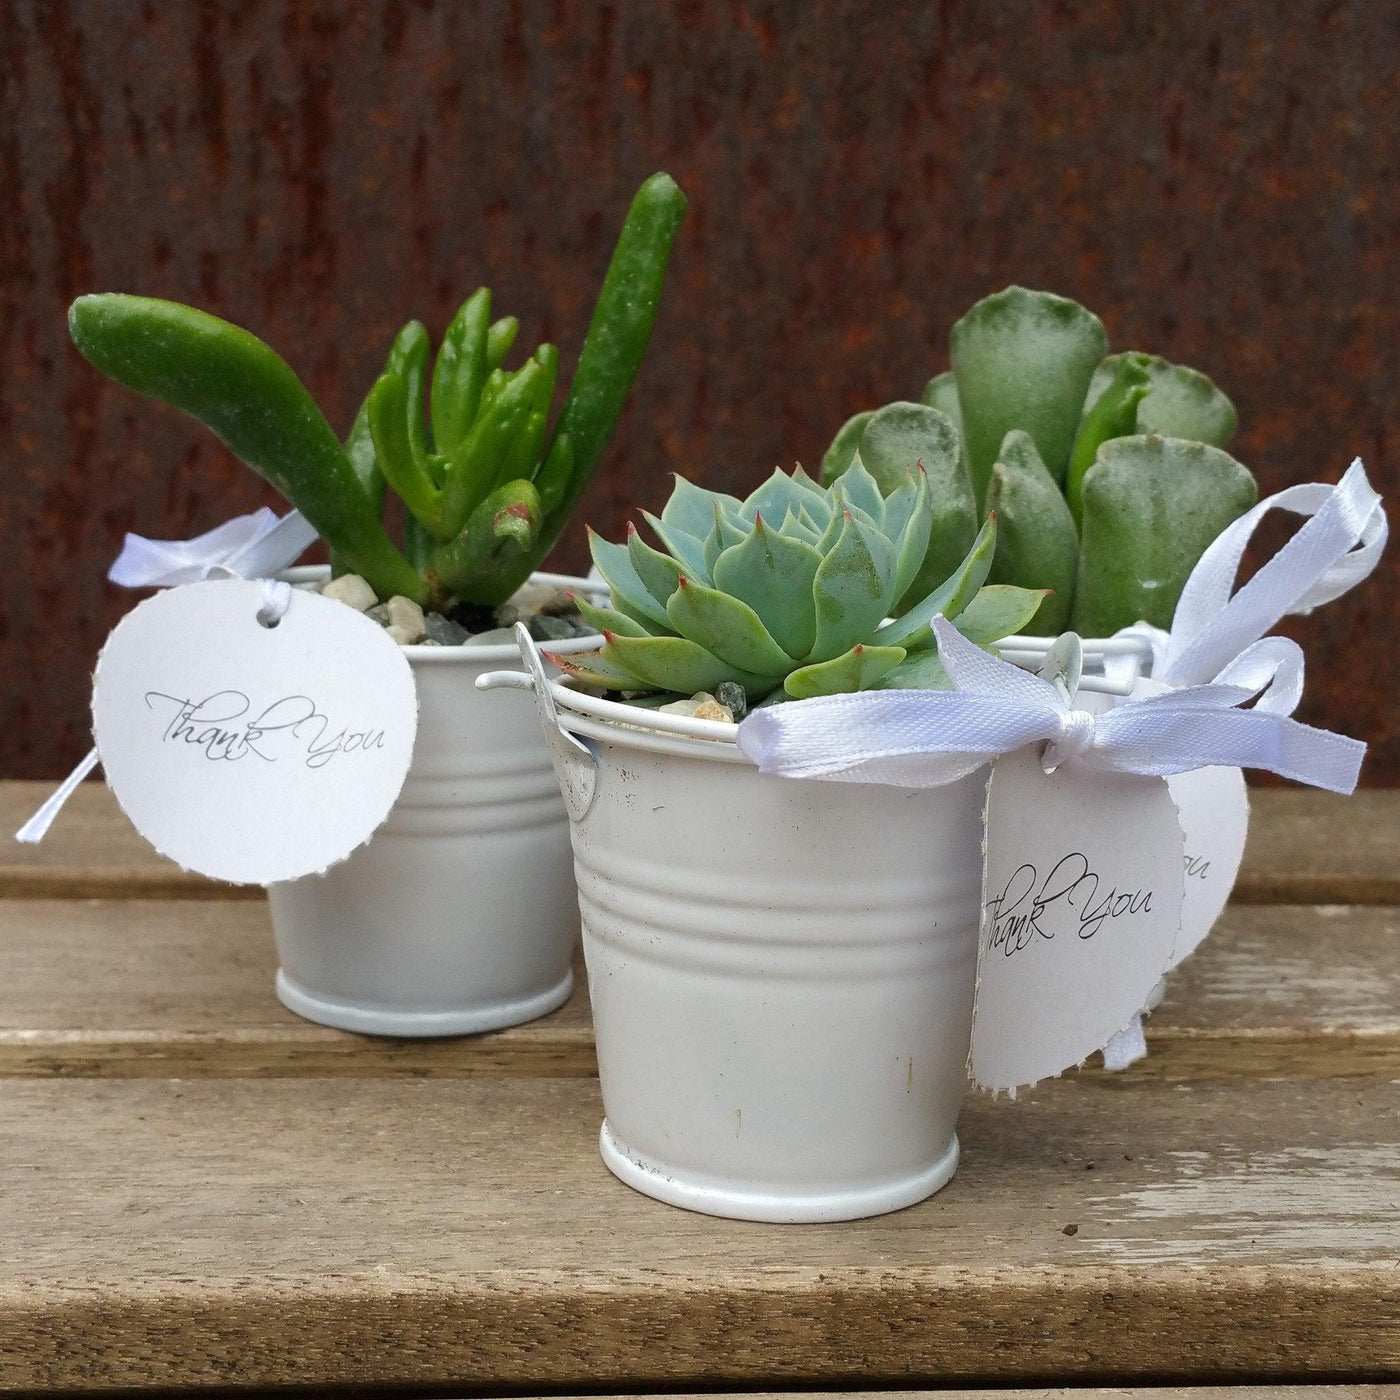 6 mini succulents in tin pails set party favor arrangements white